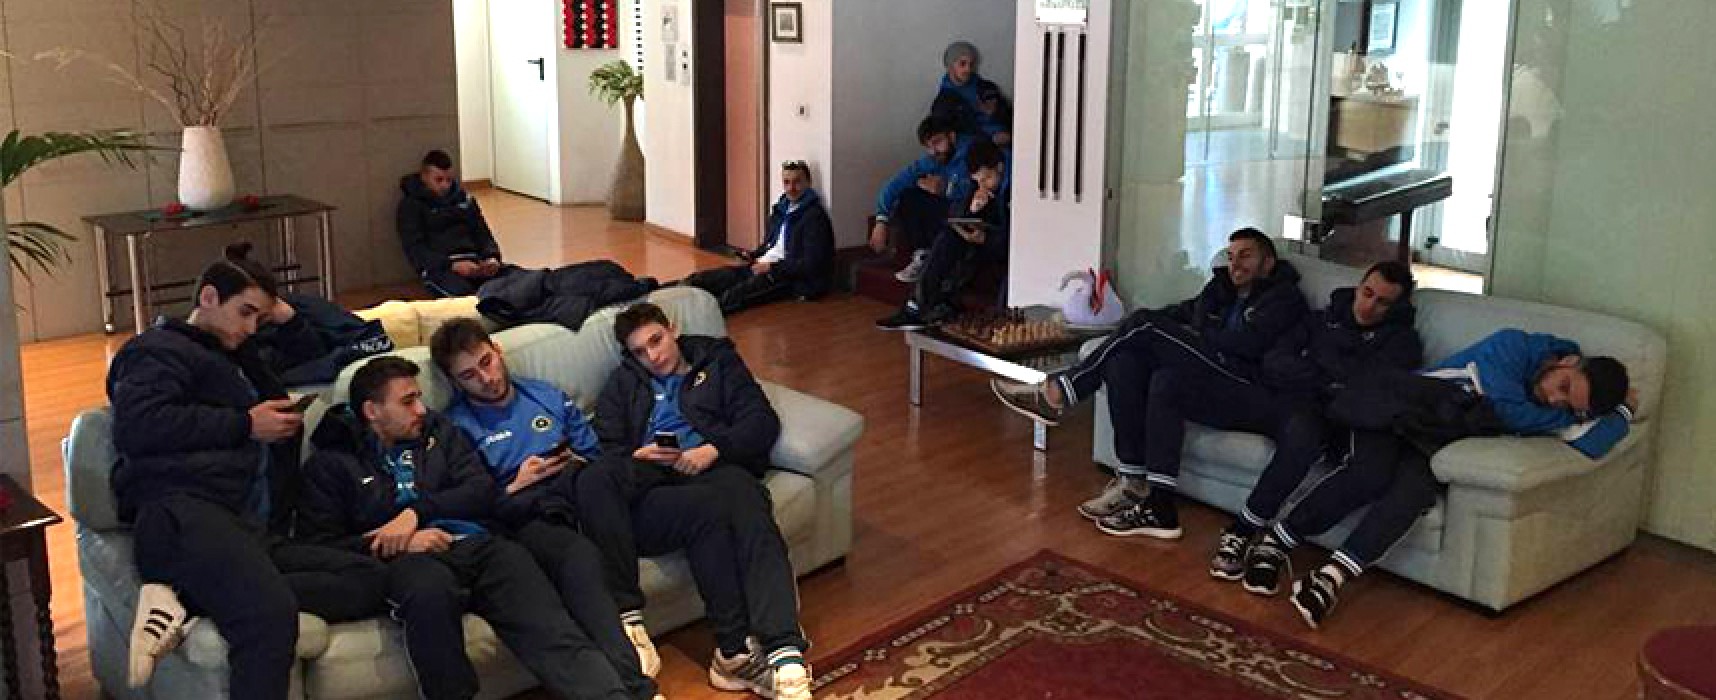 Futsal Bisceglie: ricorso respinto dopo ore di attesa, giocatori furiosi su Facebook